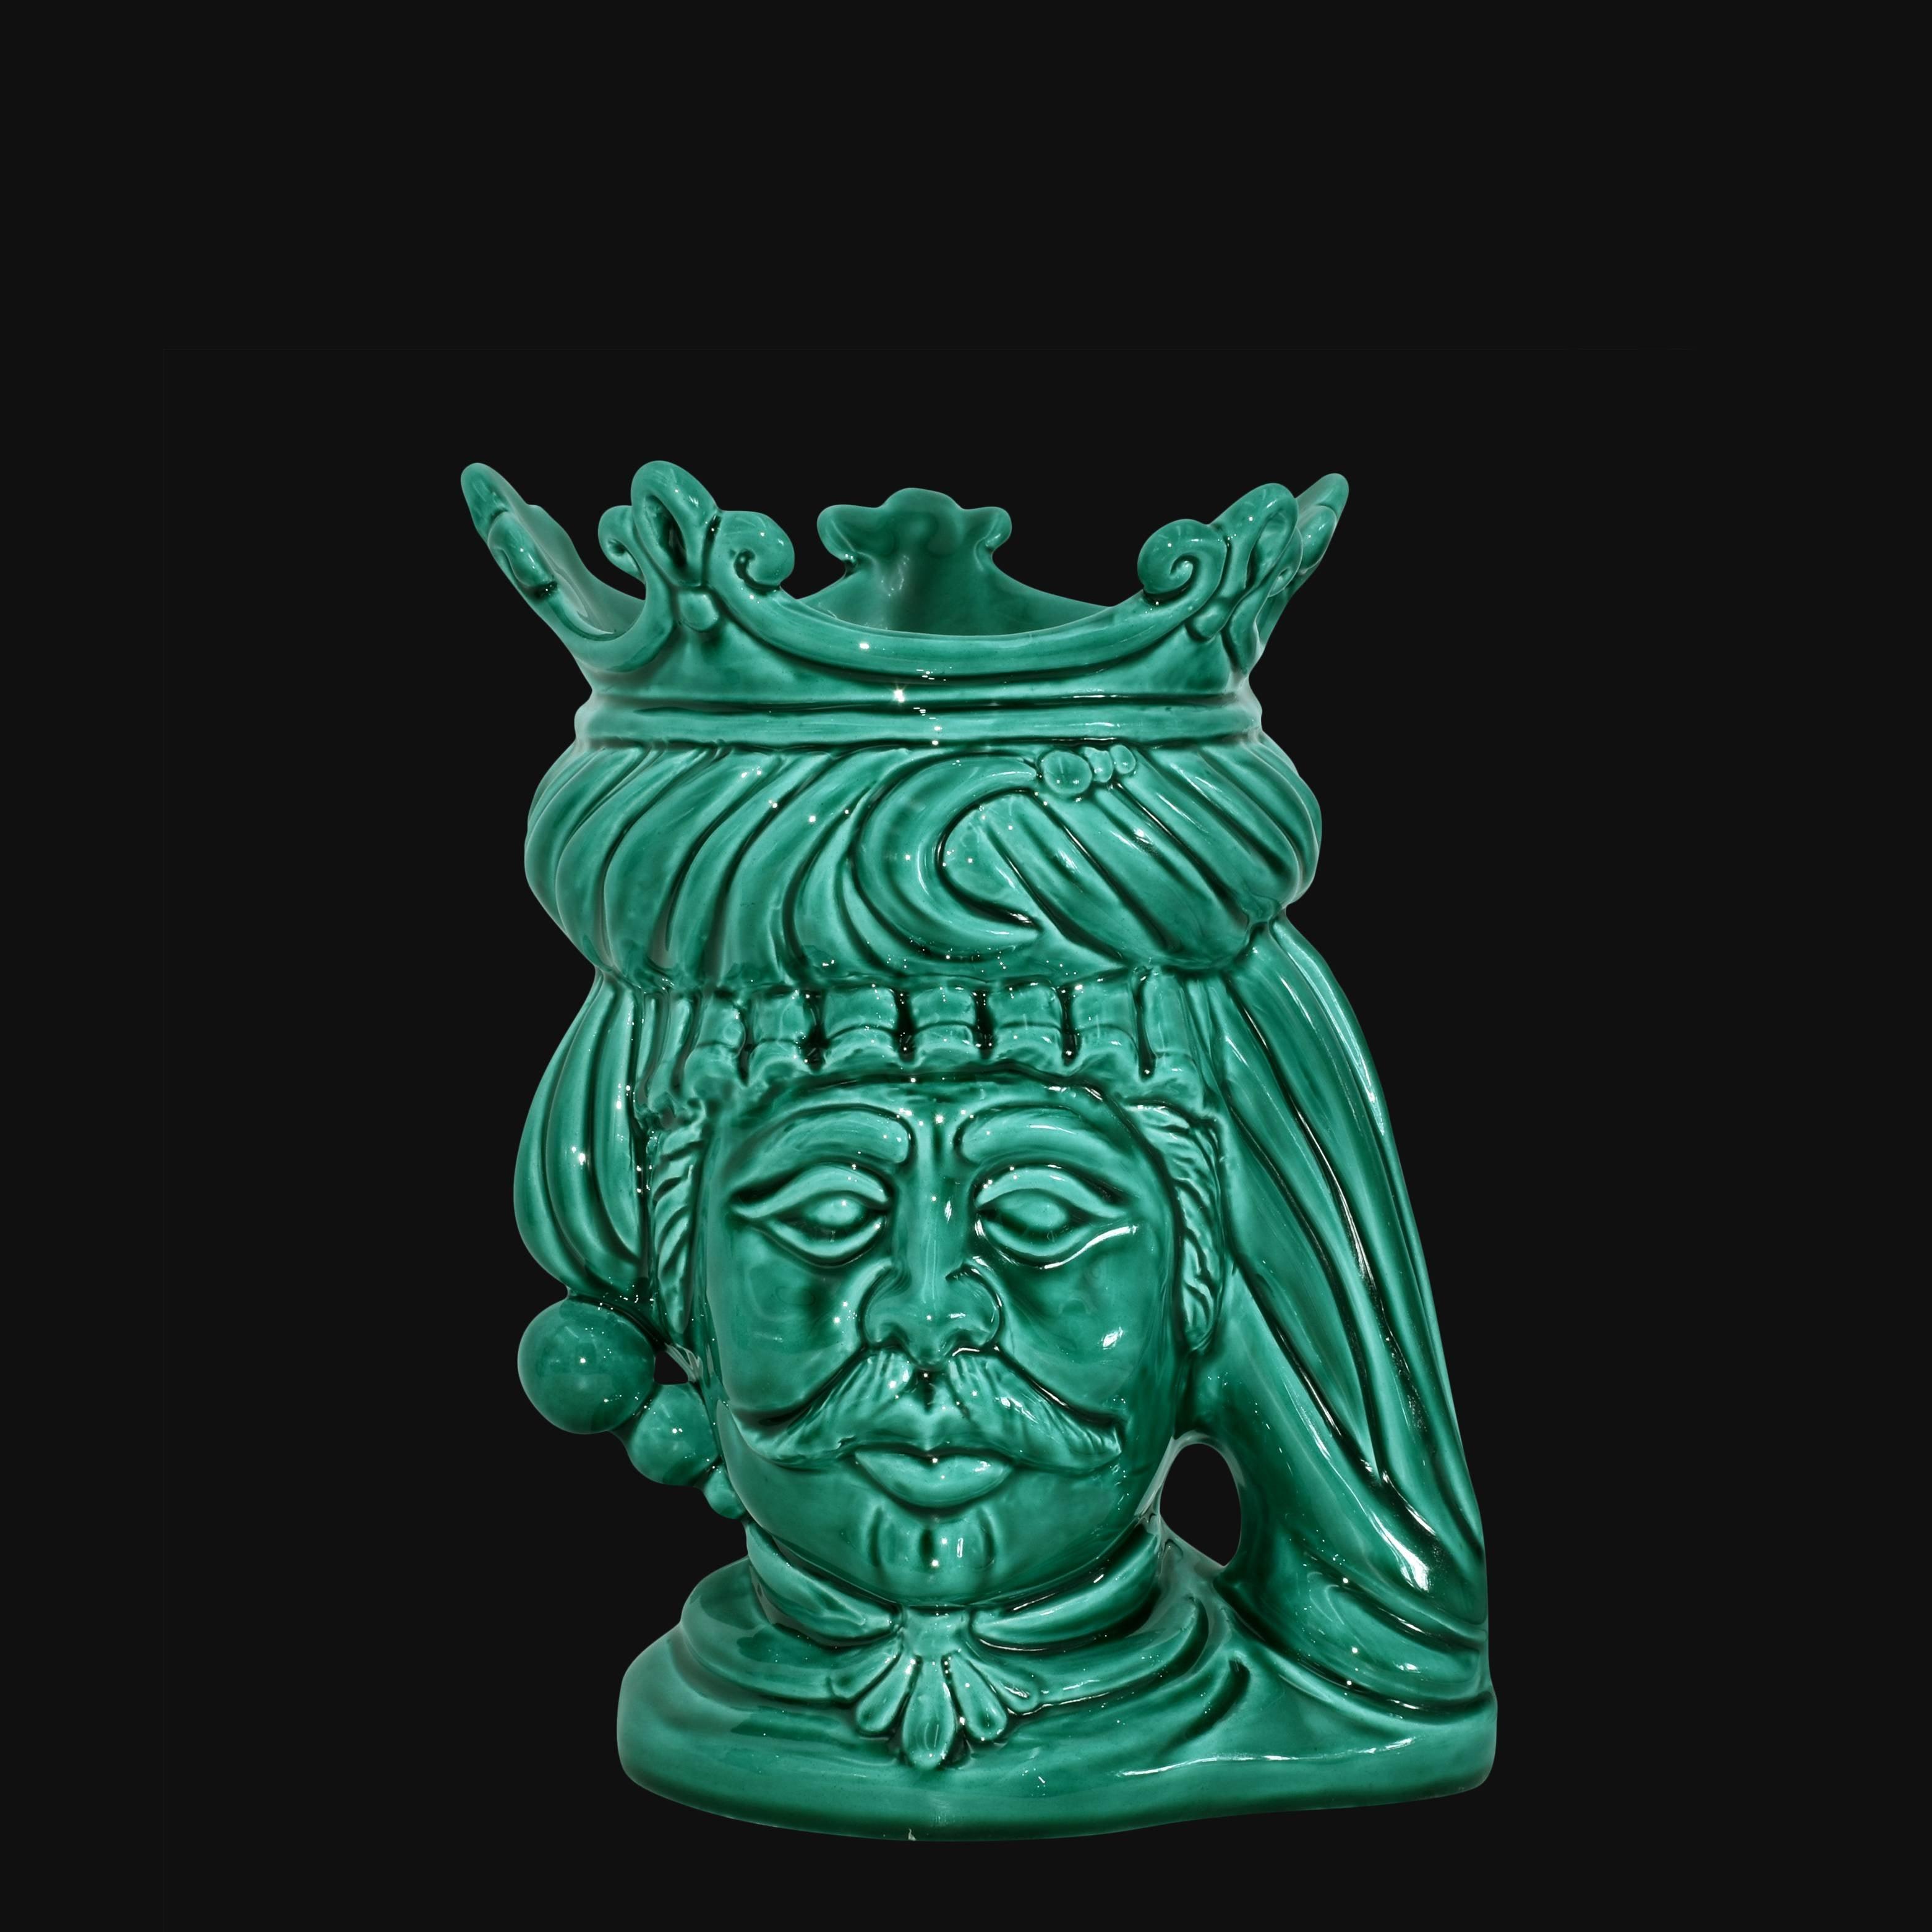 Testa h 20 liscia Verde Smeraldo maschio - Ceramiche di Caltagirone Sofia